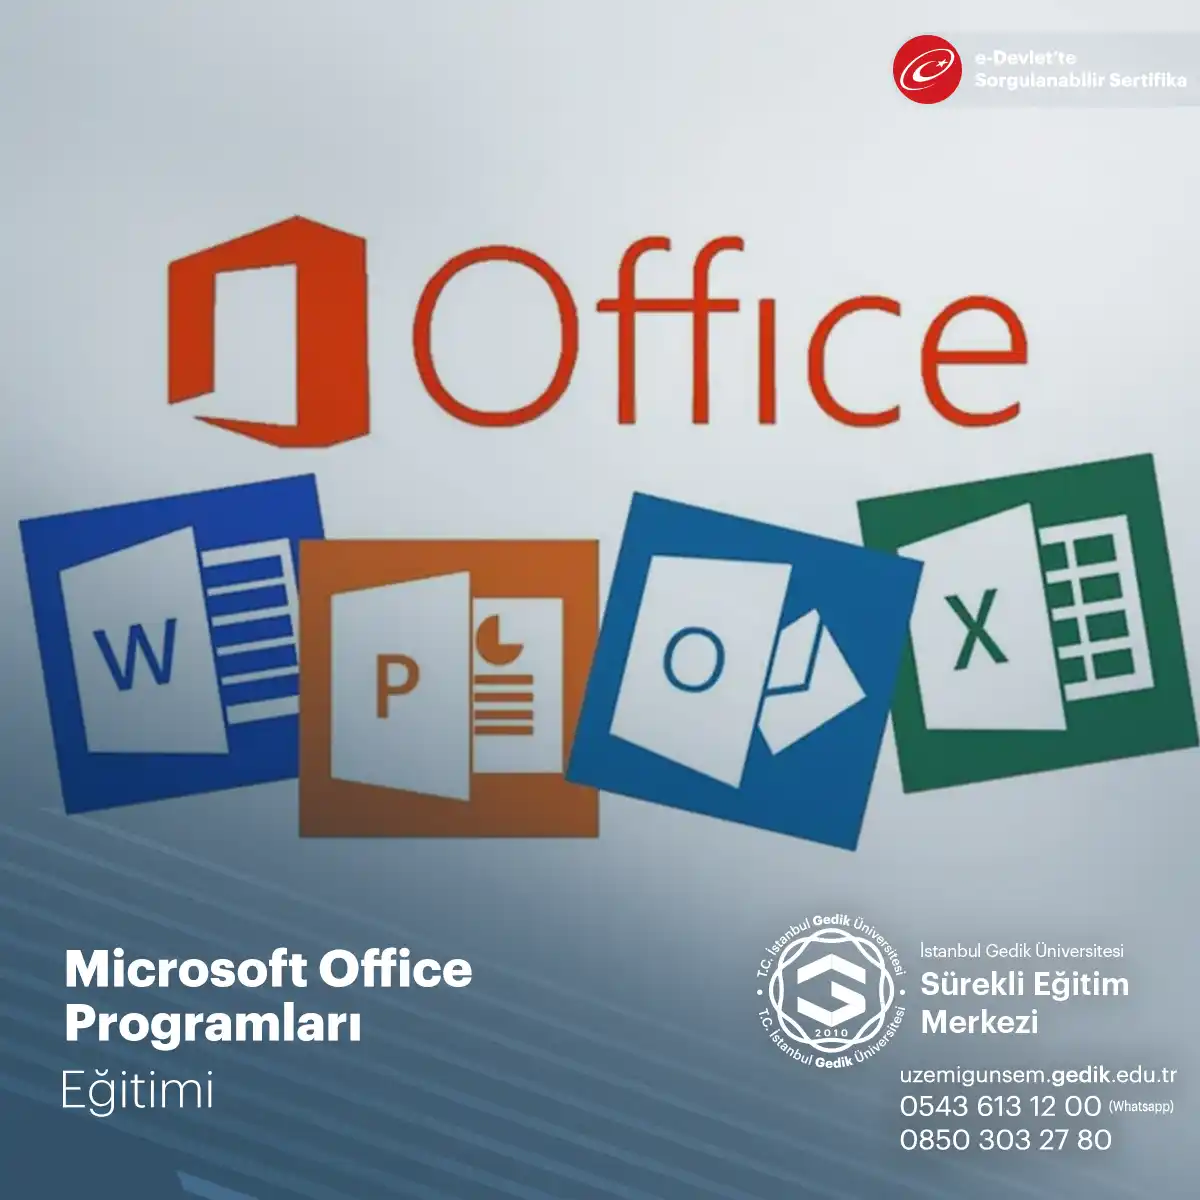 Microsoft Office, özellikle belge oluşturma, veri analizi ve sunum hazırlama konularında oldukça faydalıdır.